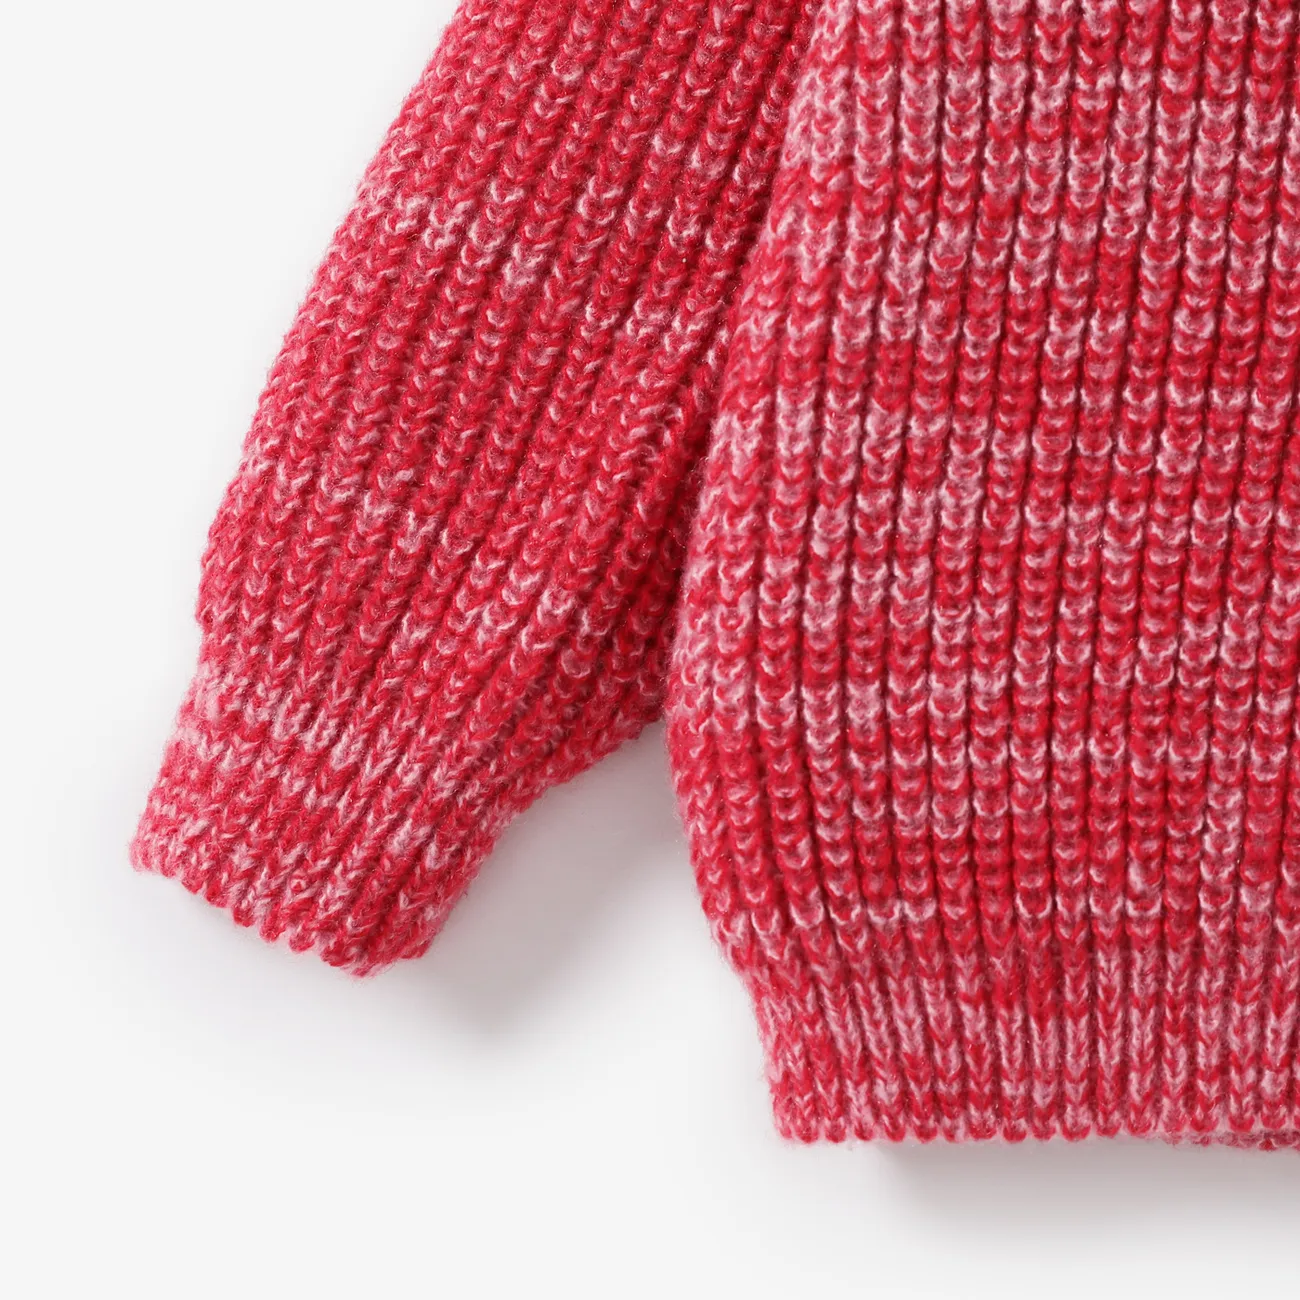 Kleinkinder Mädchen Basics Pullover rot/weiß big image 1